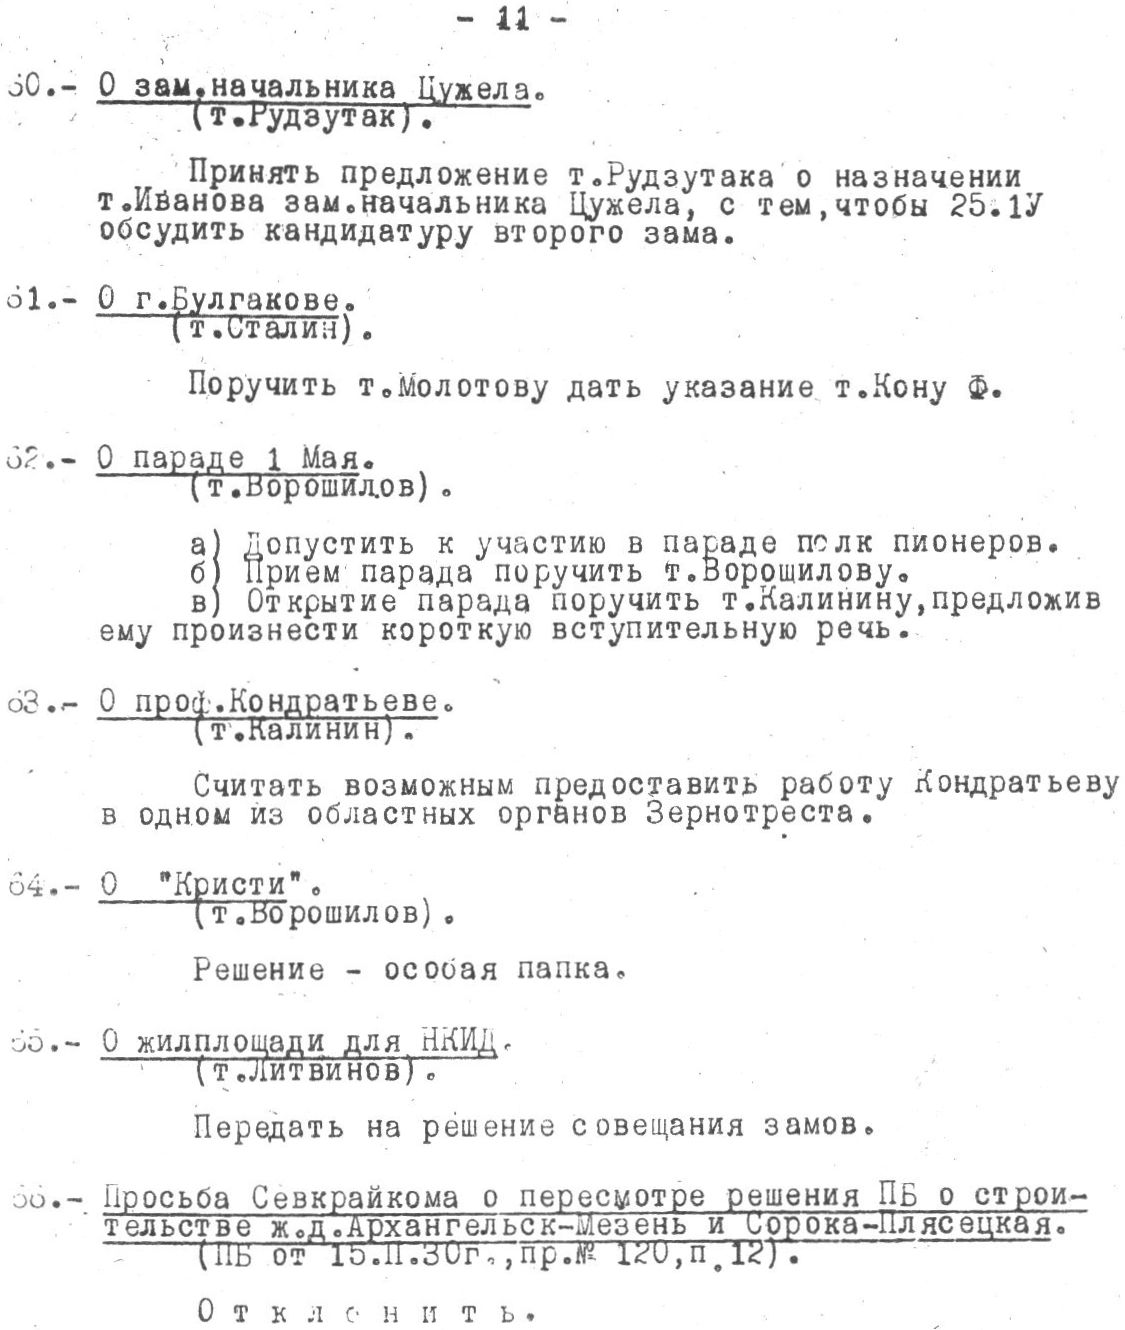 Протокол заседания Политбюро ЦК ВКП(б)